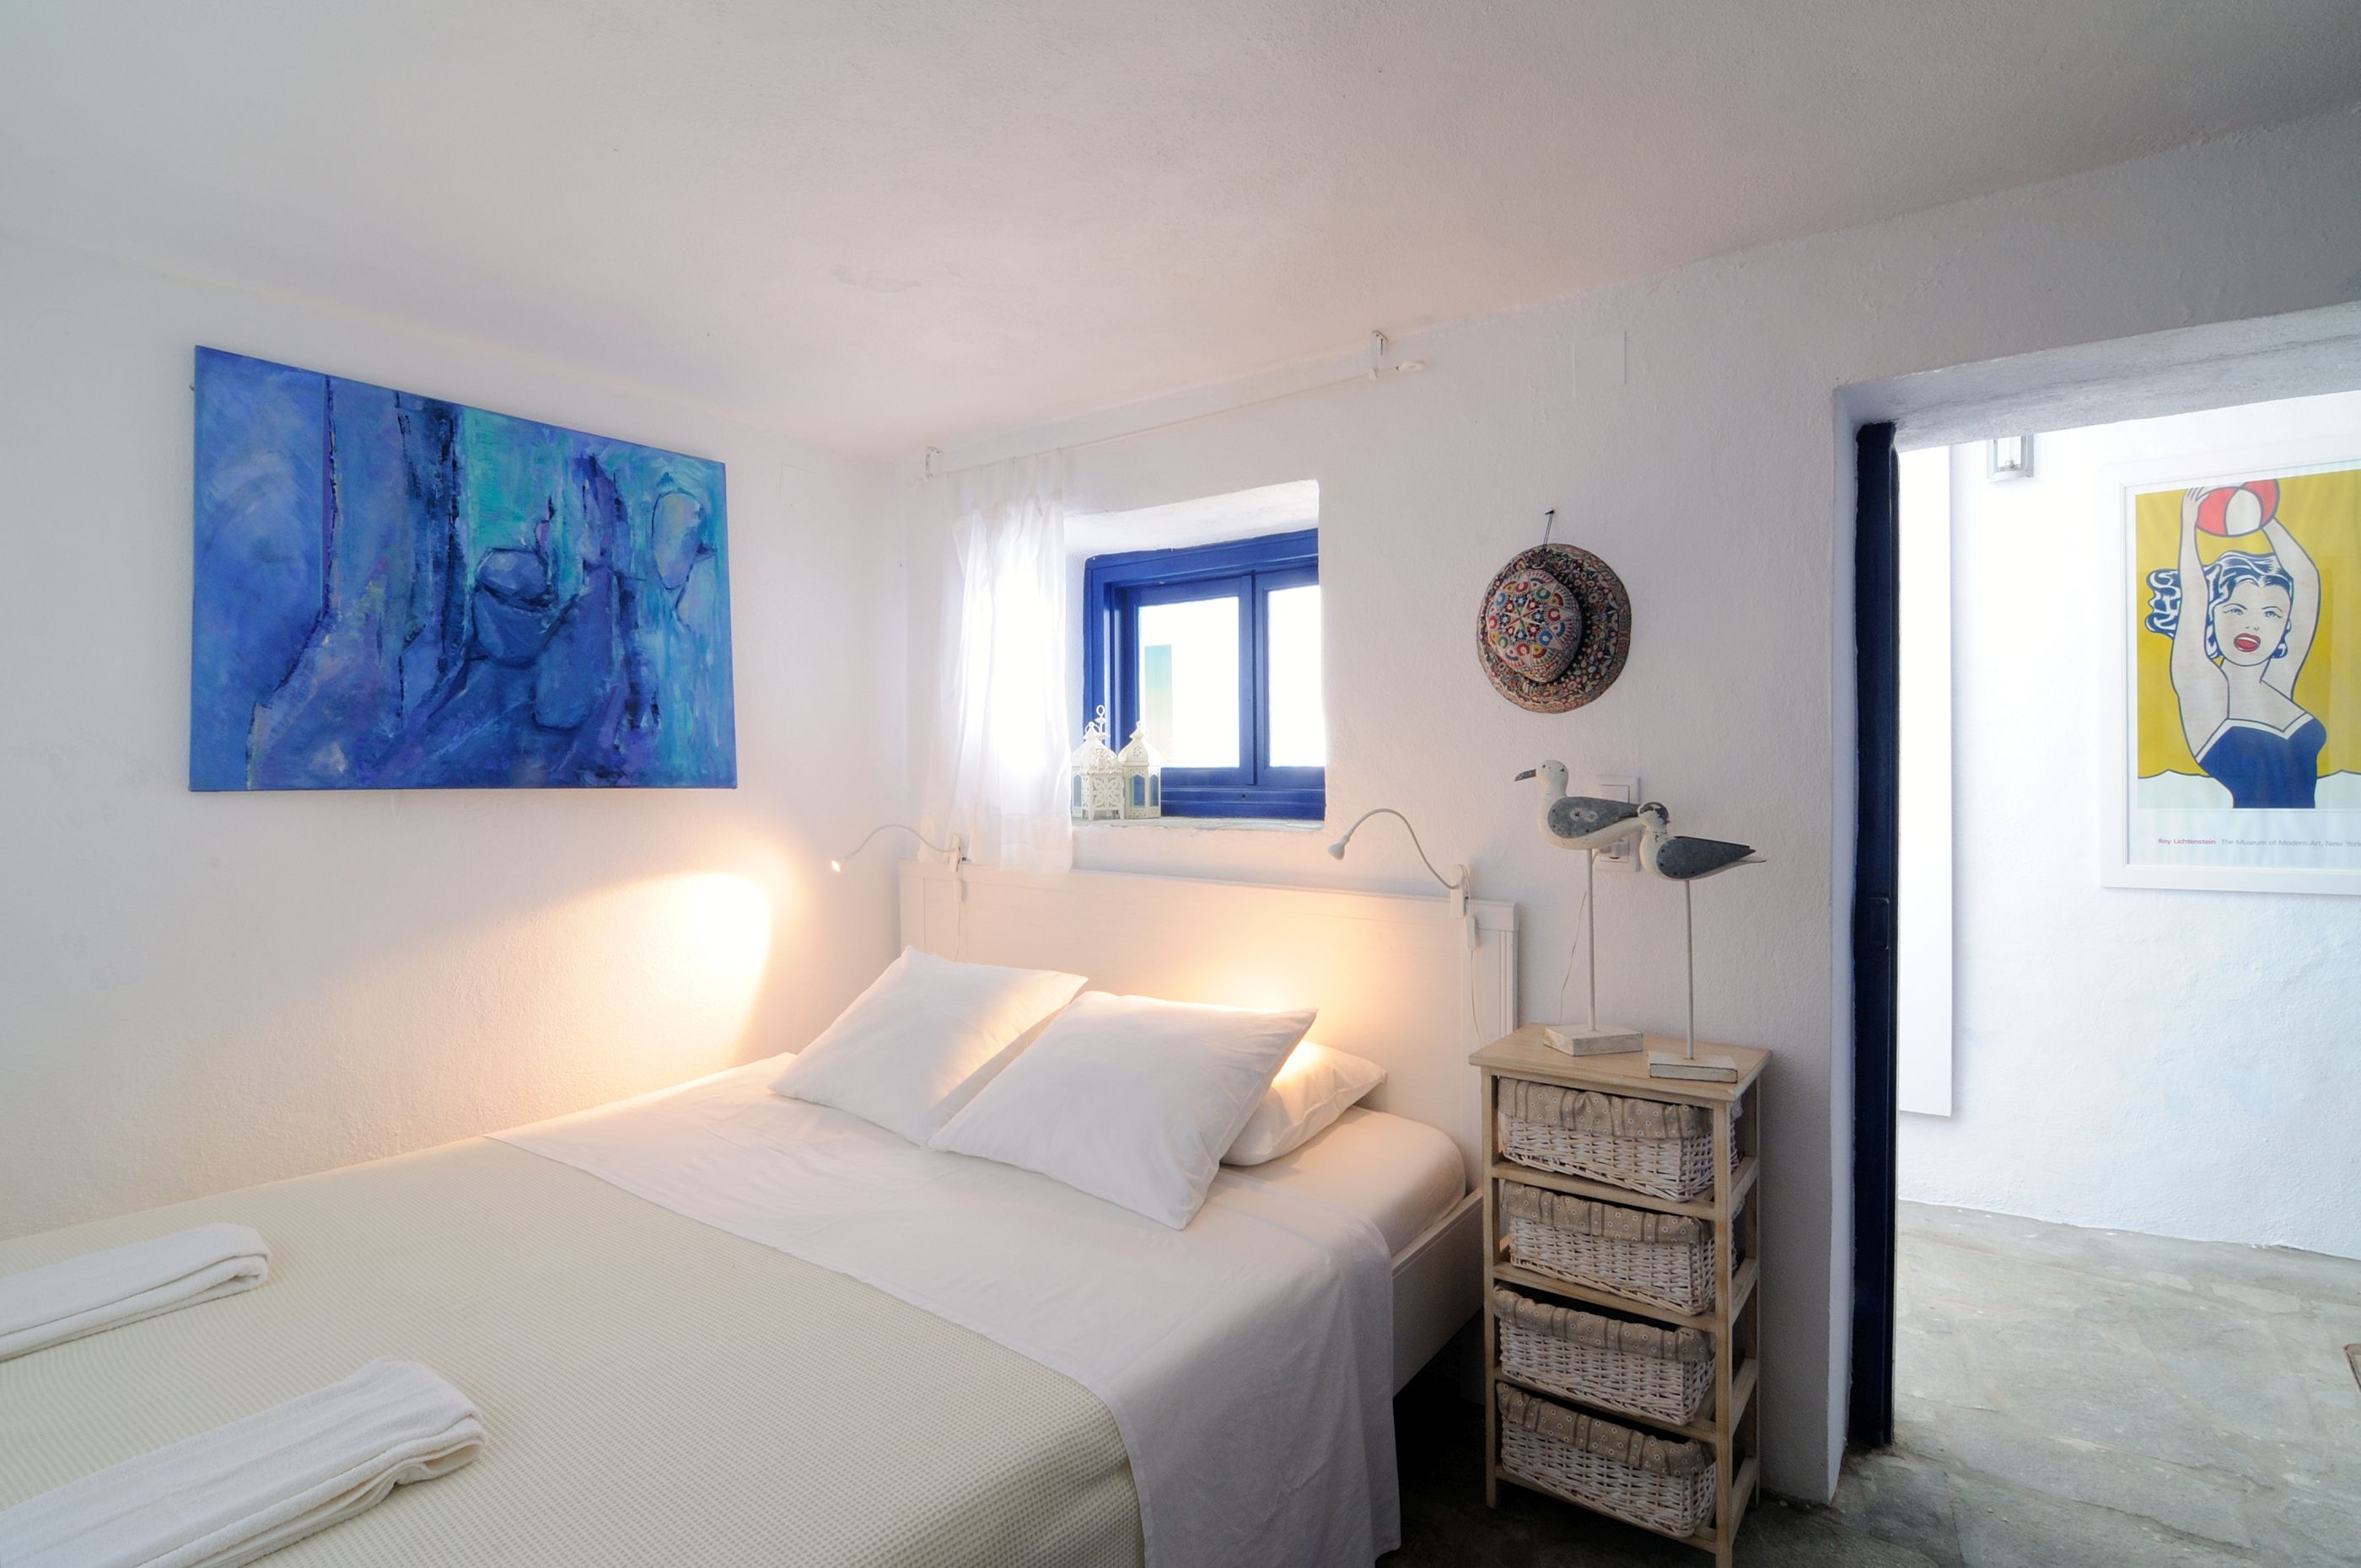 A bedroom in Exambella, Greece